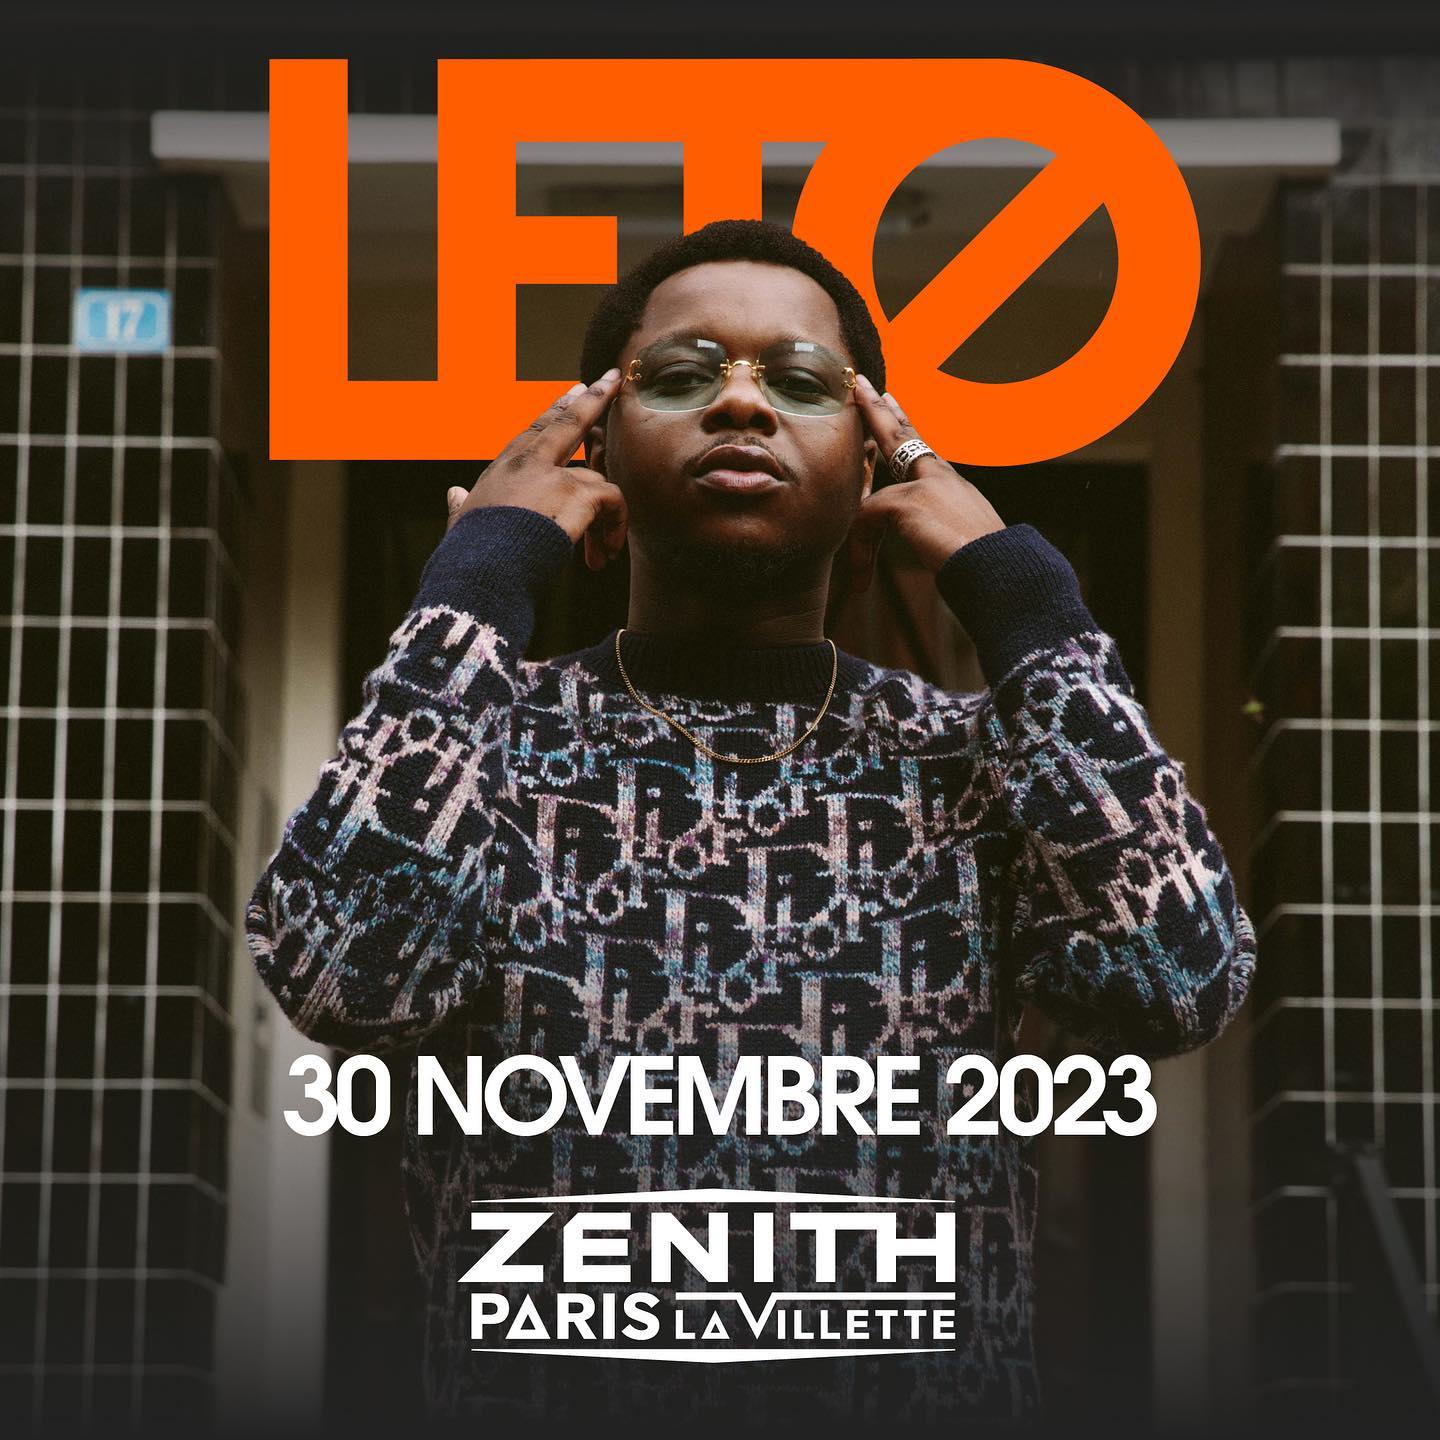 Leto en concert à Paris